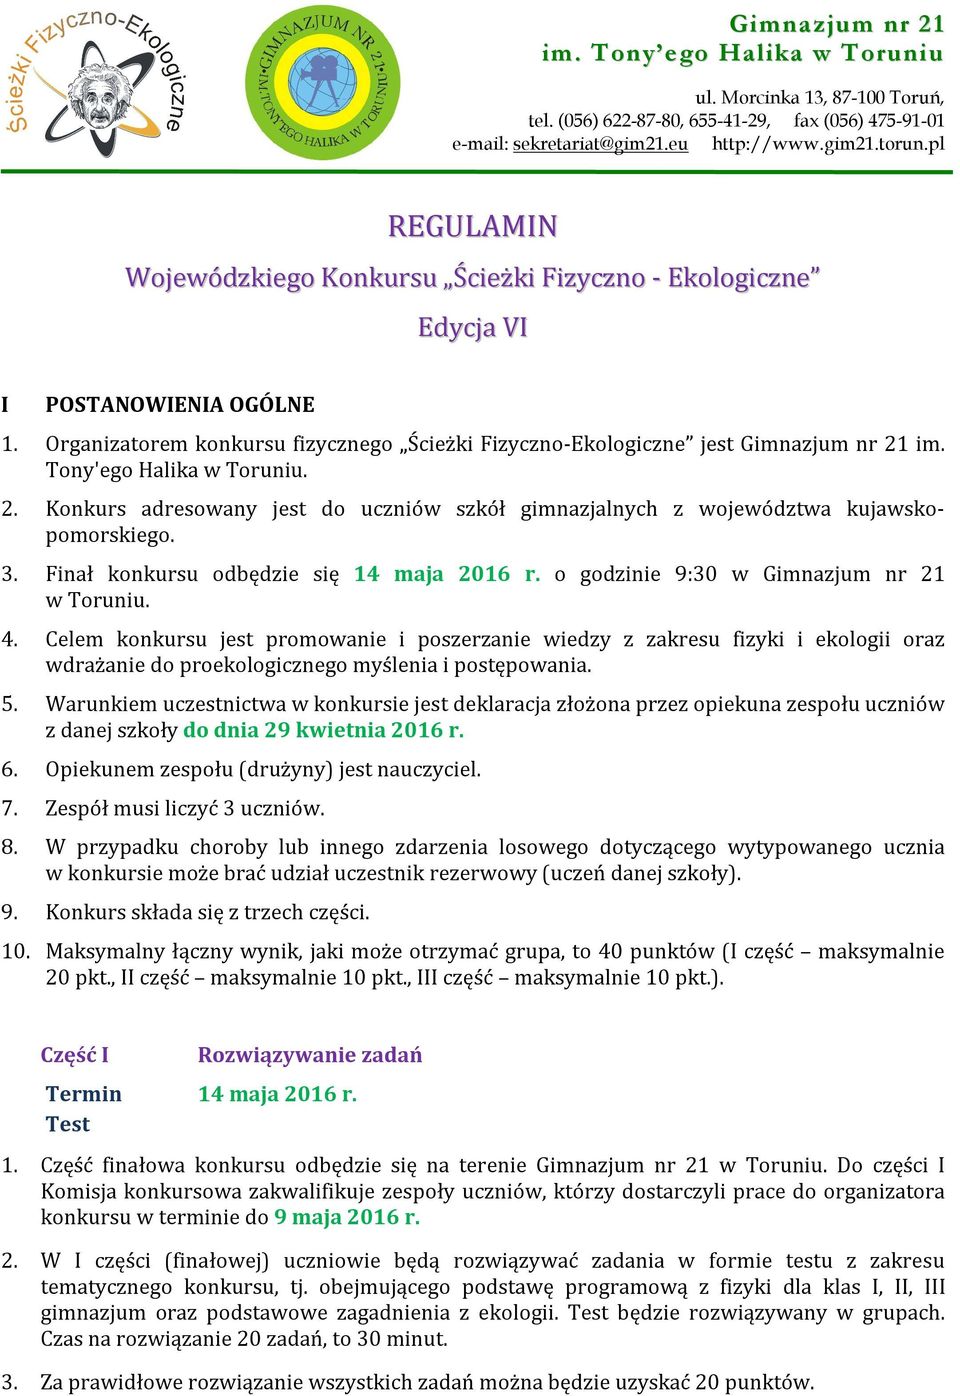 Tony'ego Halika w Toruniu. 2. Konkurs adresowany jest do uczniów szkół gimnazjalnych z województwa kujawskopomorskiego. 3. Finał konkursu odbędzie się 14 maja 2016 r.